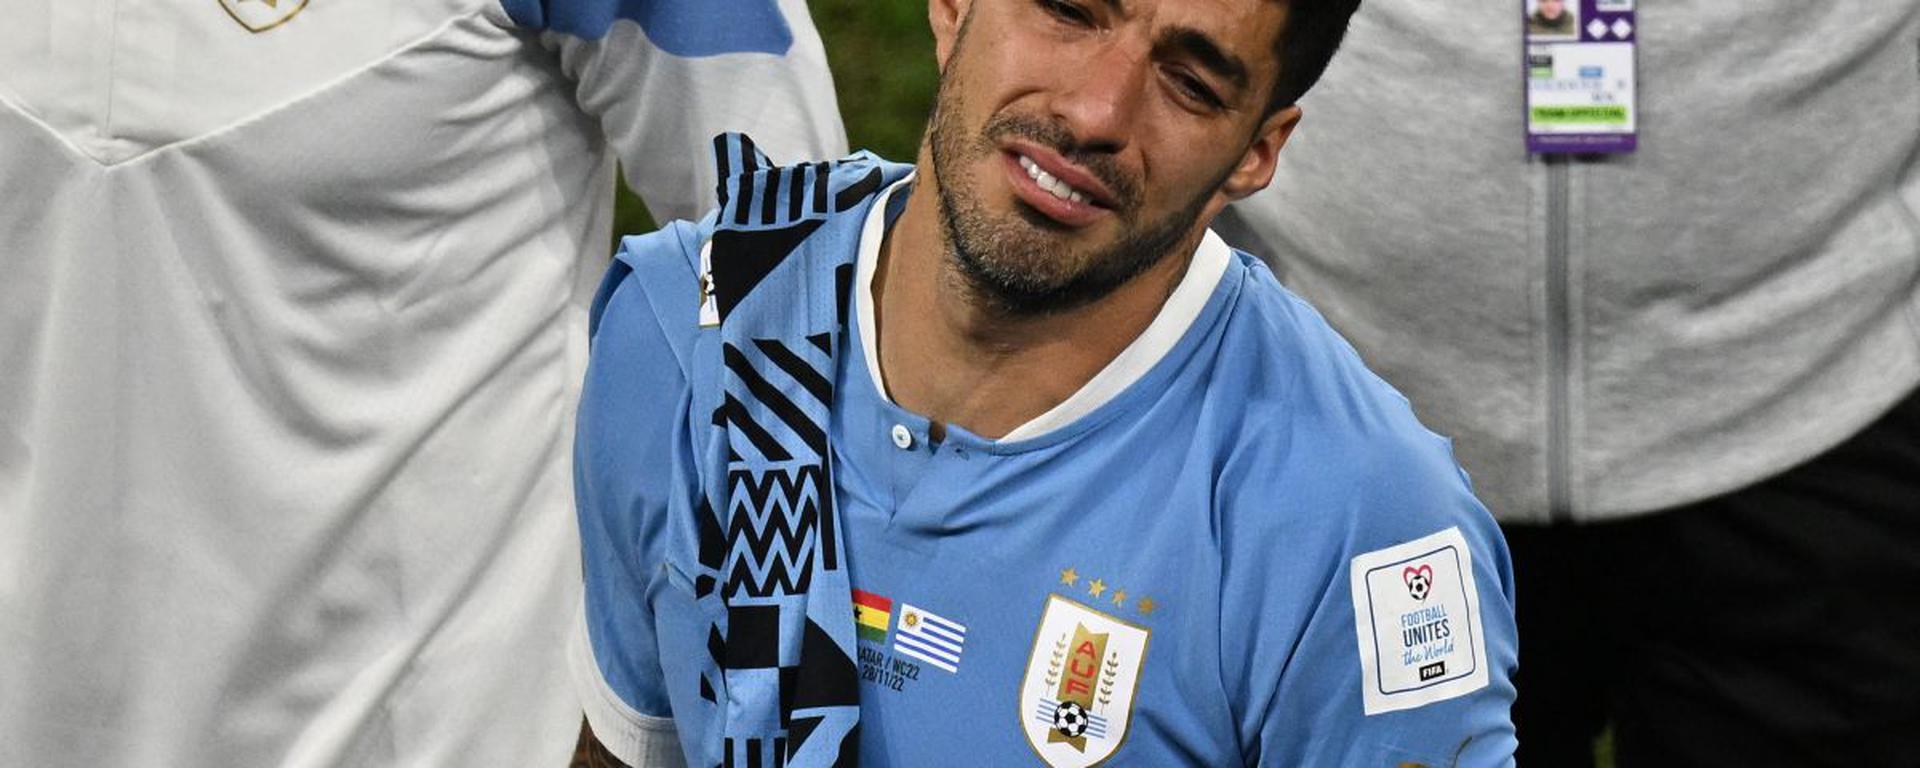 Uruguay eliminado por un gol: el tanto que el árbitro le negó y derrumbó a Suárez | CRÓNICA